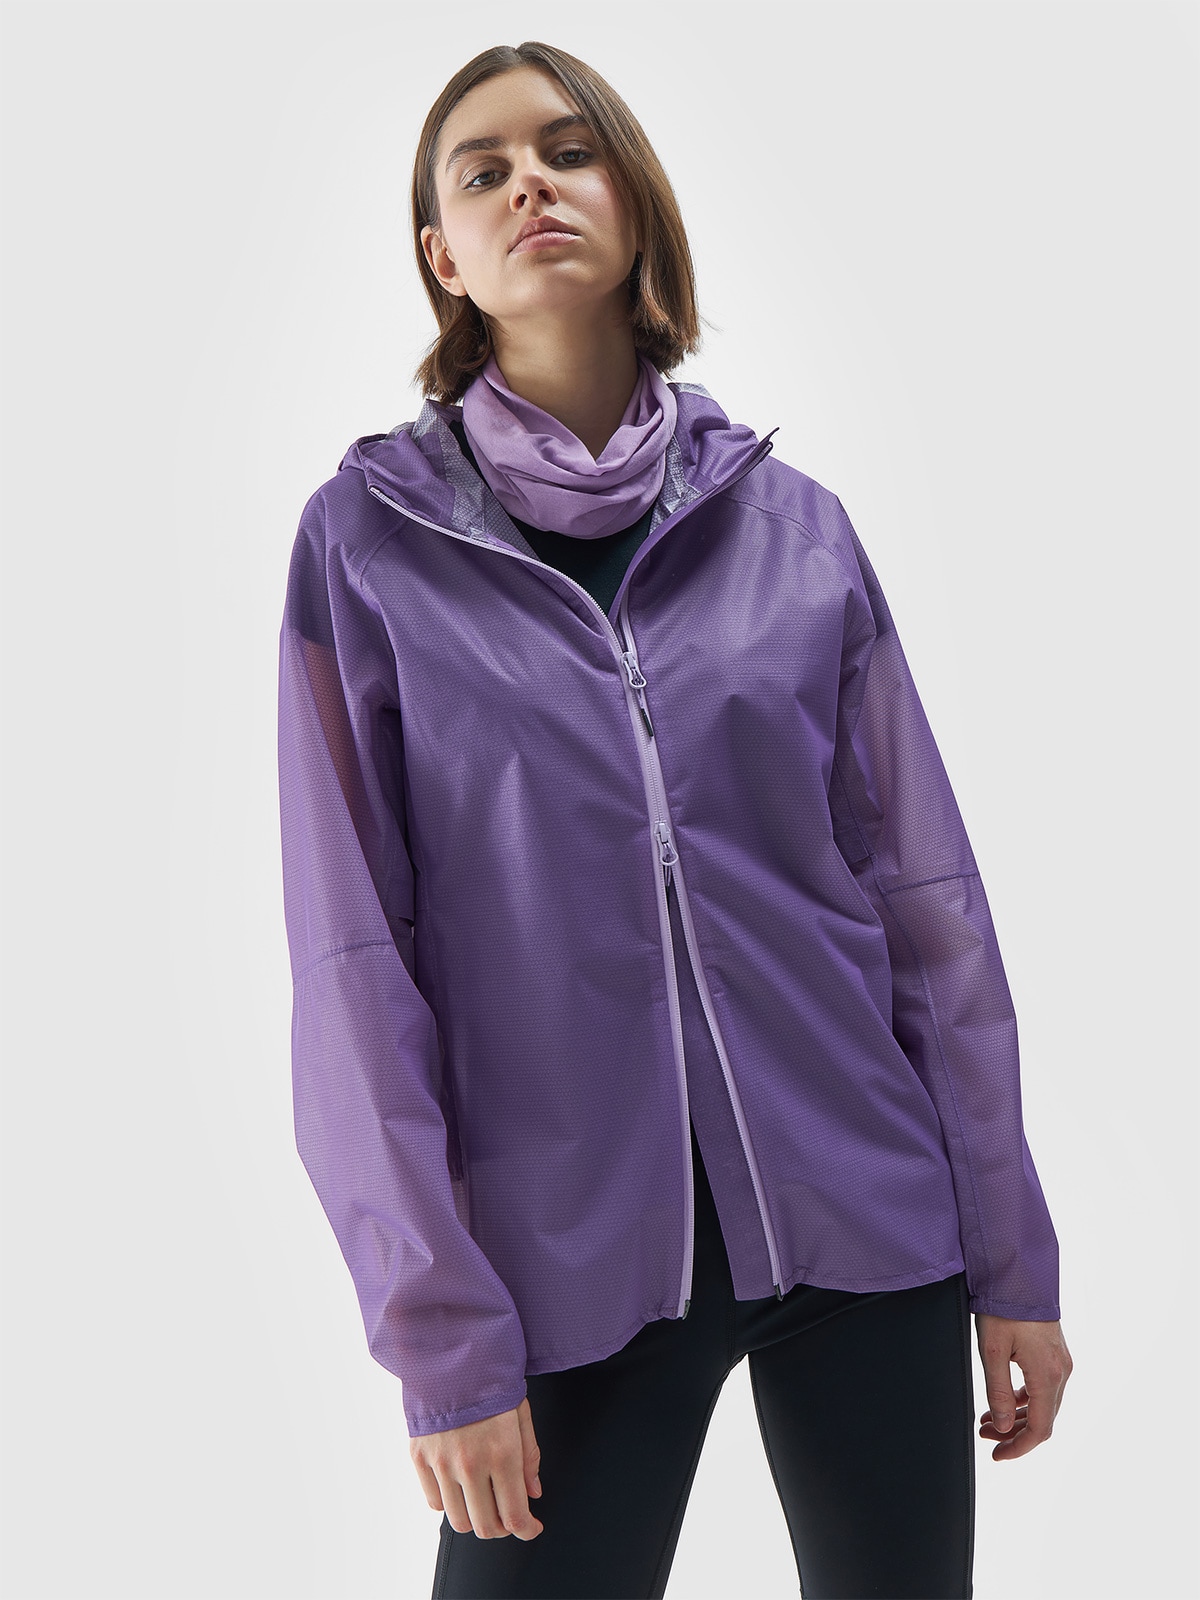 Dámska trekingová bunda s membránou 15000 - fialová